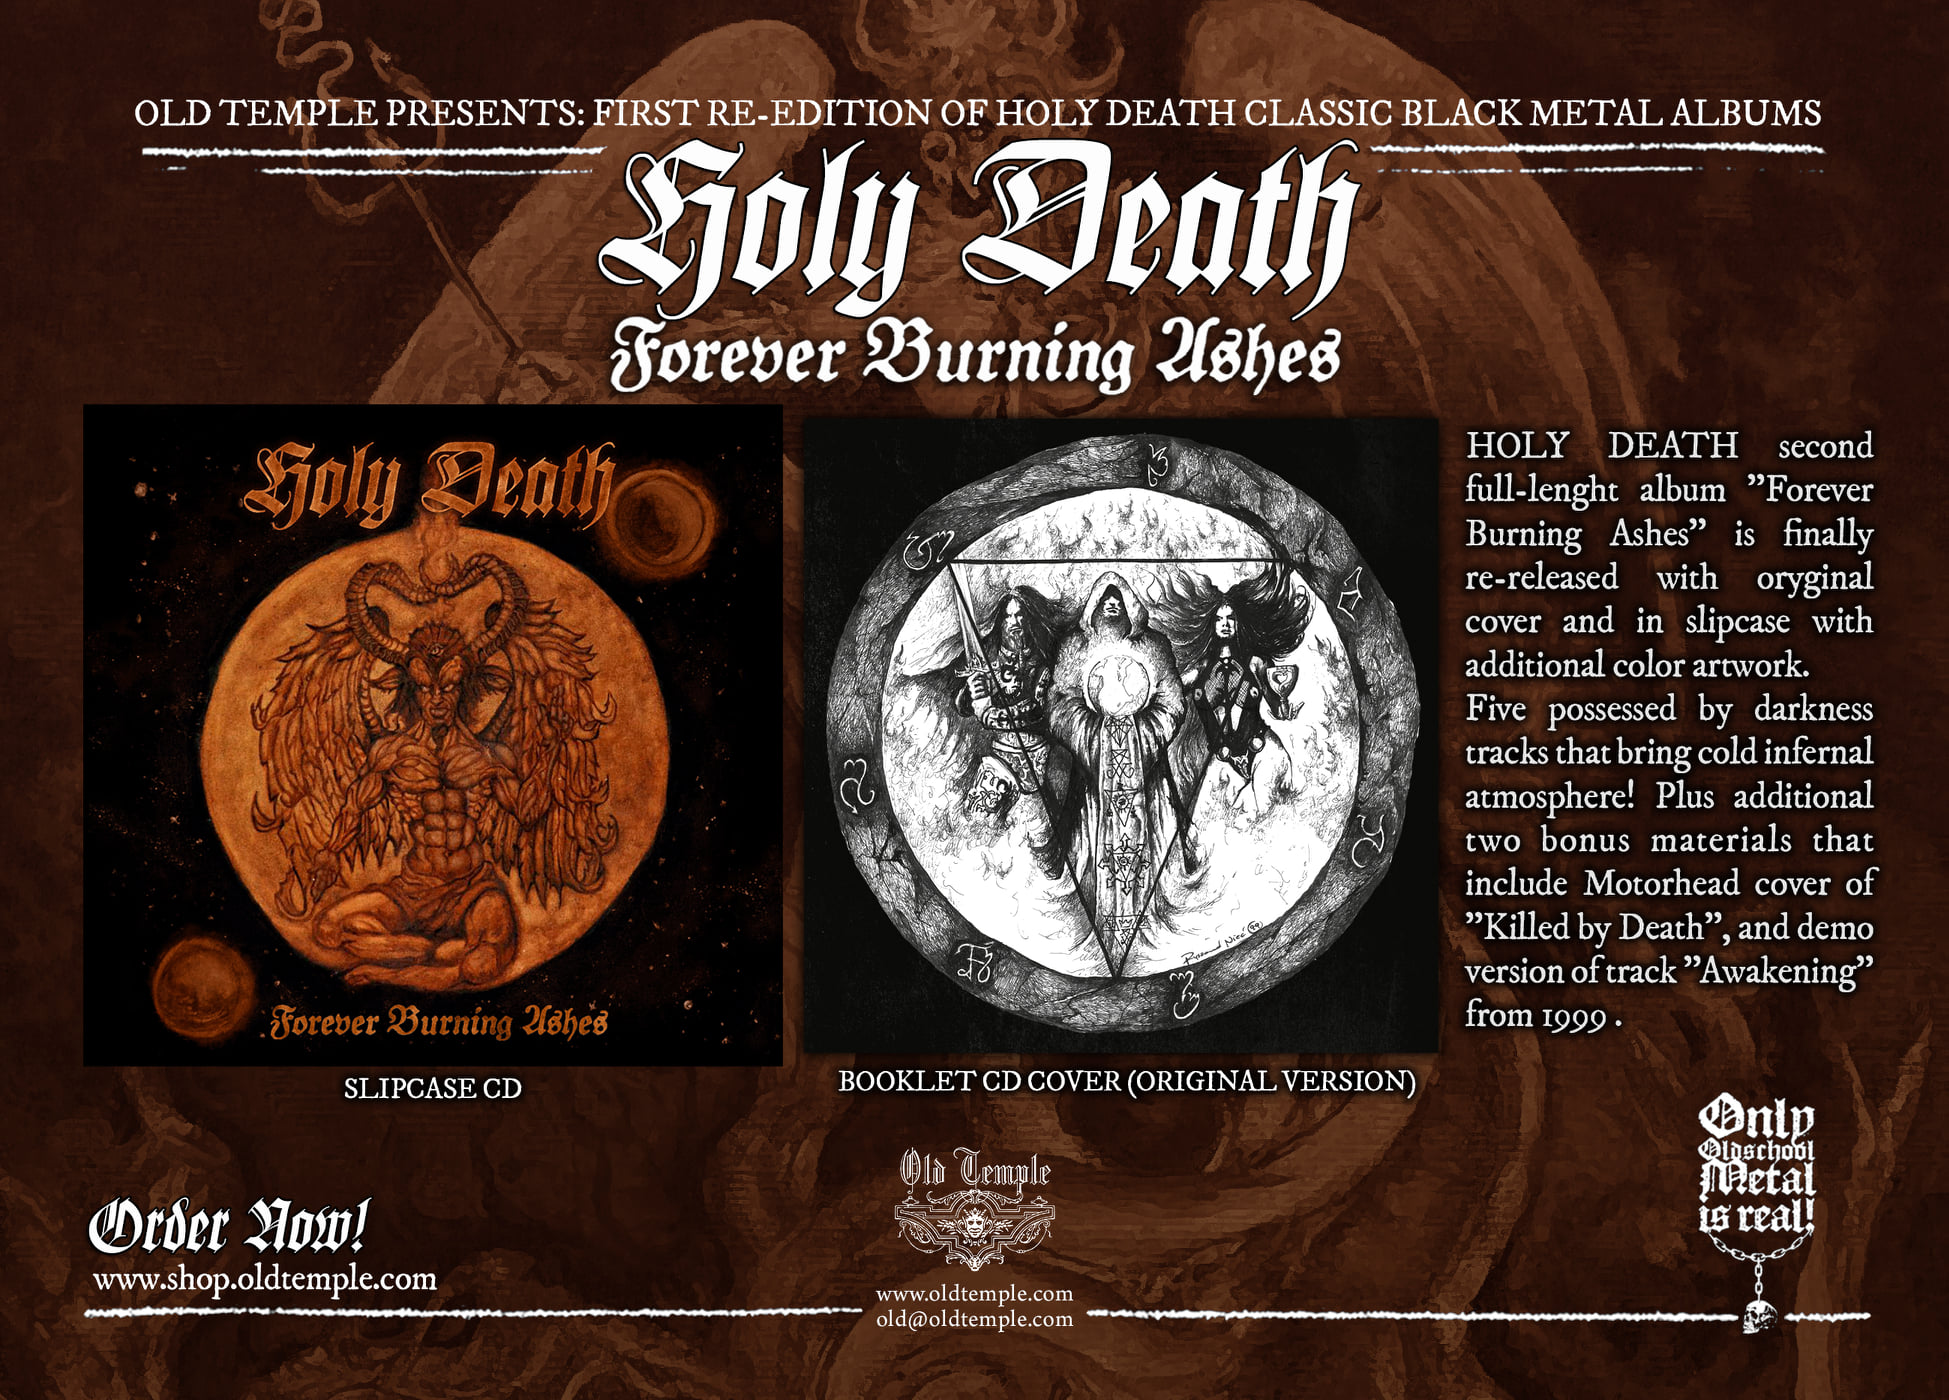 Wznowienie drugiej płyty Holy Death na kompakcie